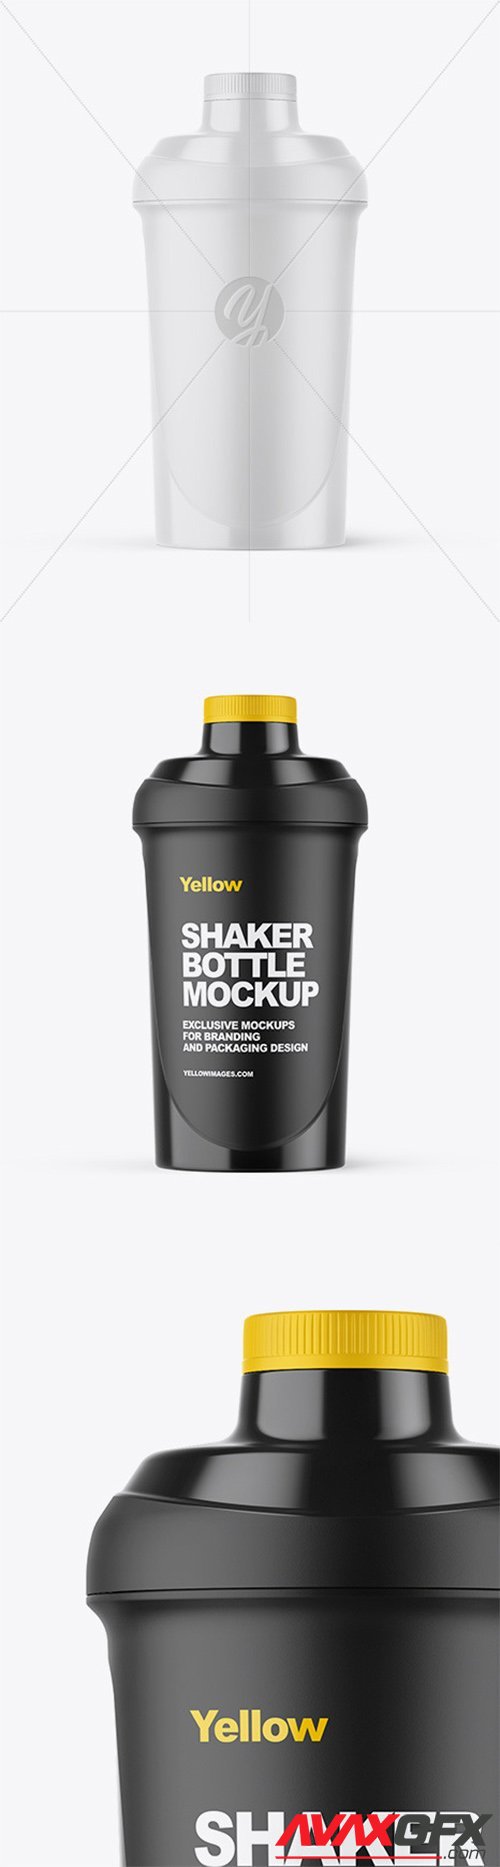 Shaker Bottle Mockup 55448